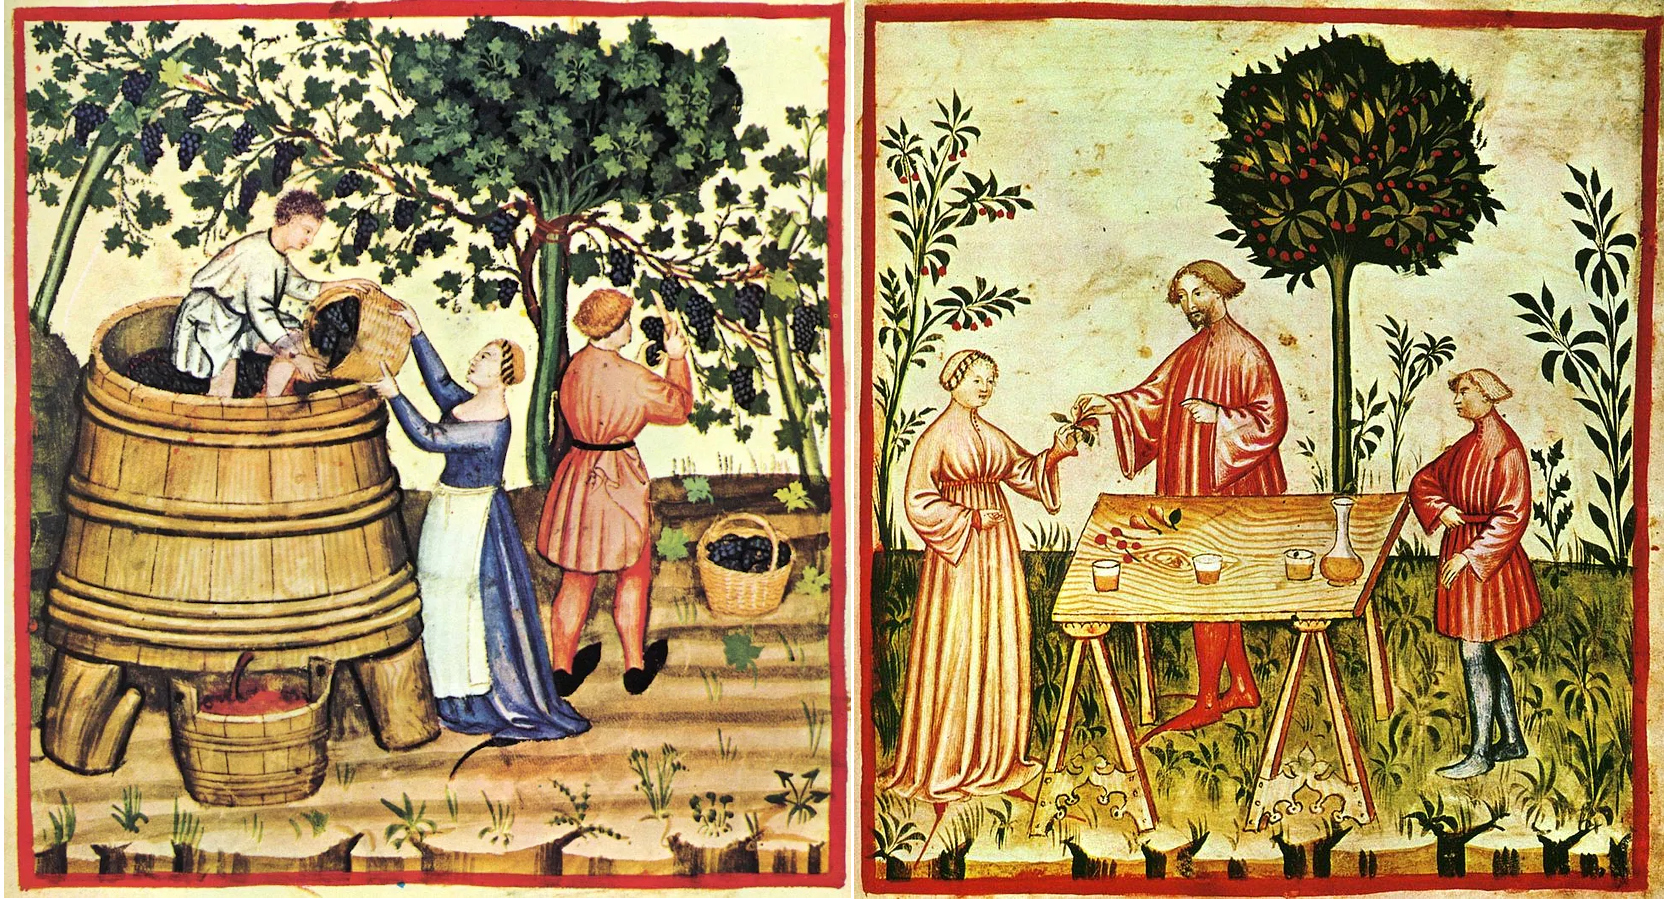 Średniowiecze: wyrób i degustacja wina. Ilustracje ze średniowiecznej księgi.